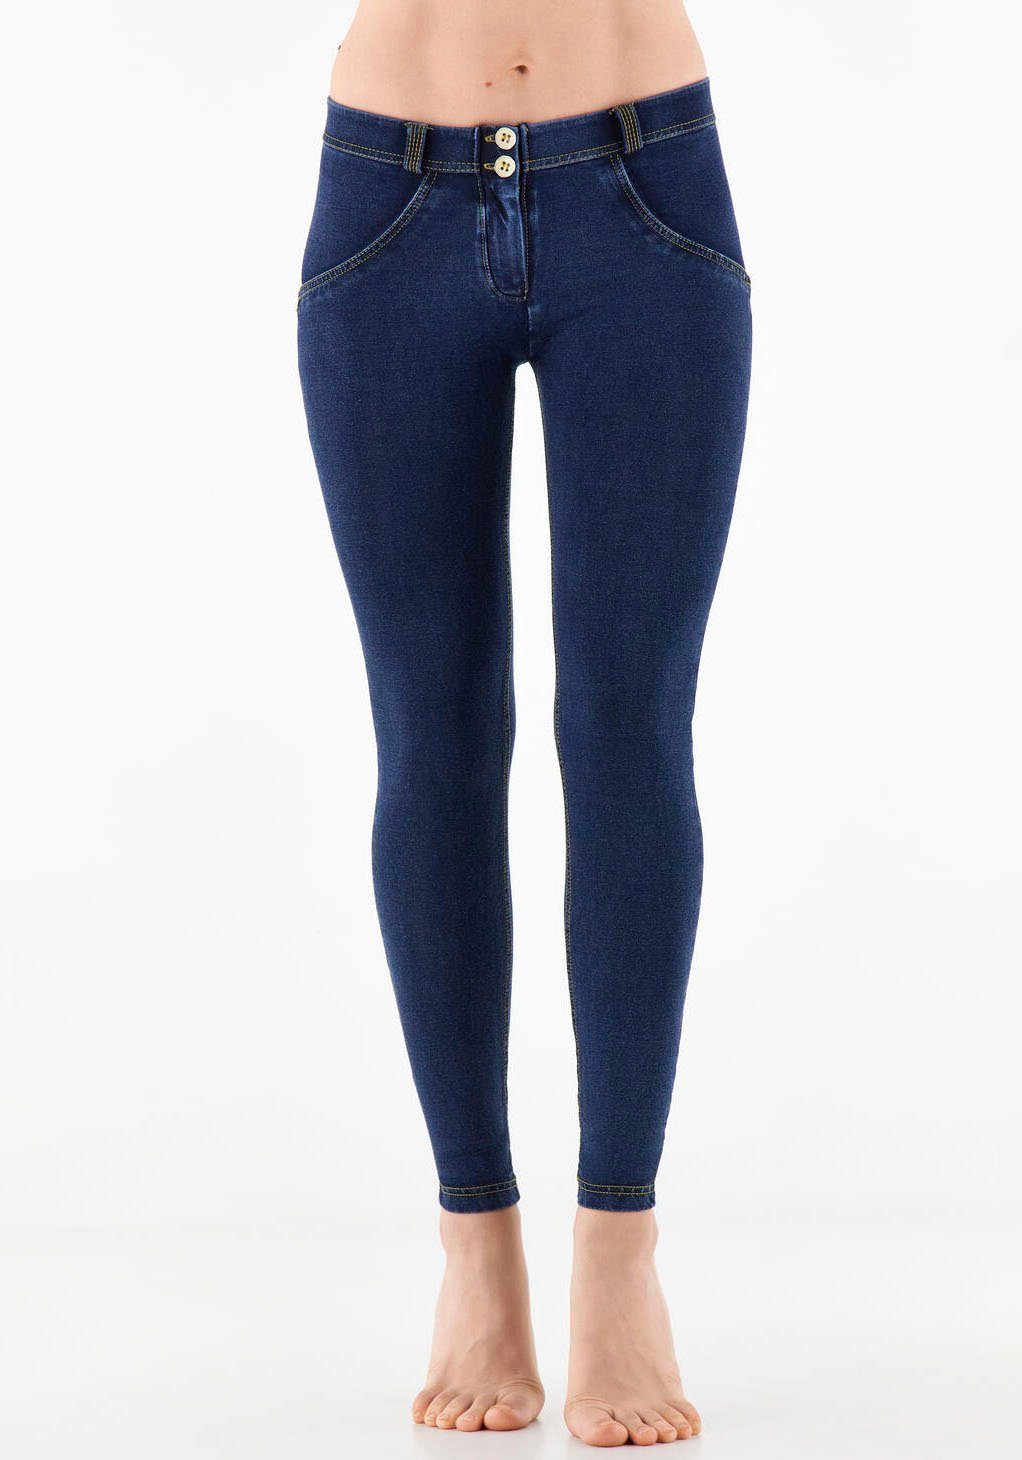 Freddy Damen Jeans online kaufen | OTTO